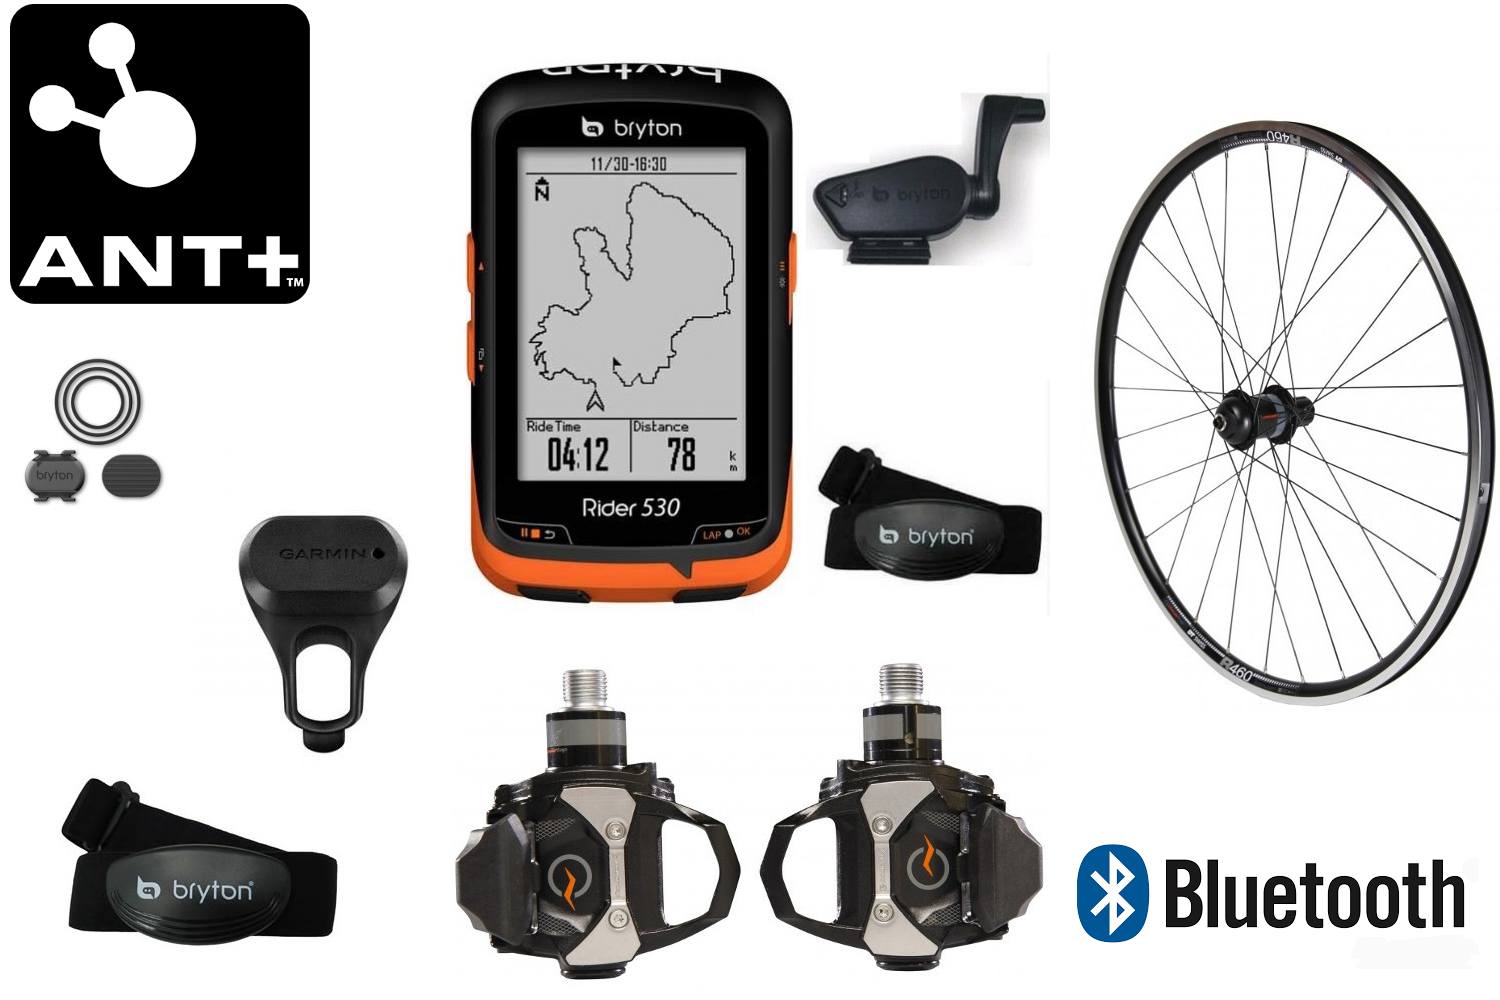 Capteur de cadence sans fil pour vélo, Bluetooth 4.0, pour